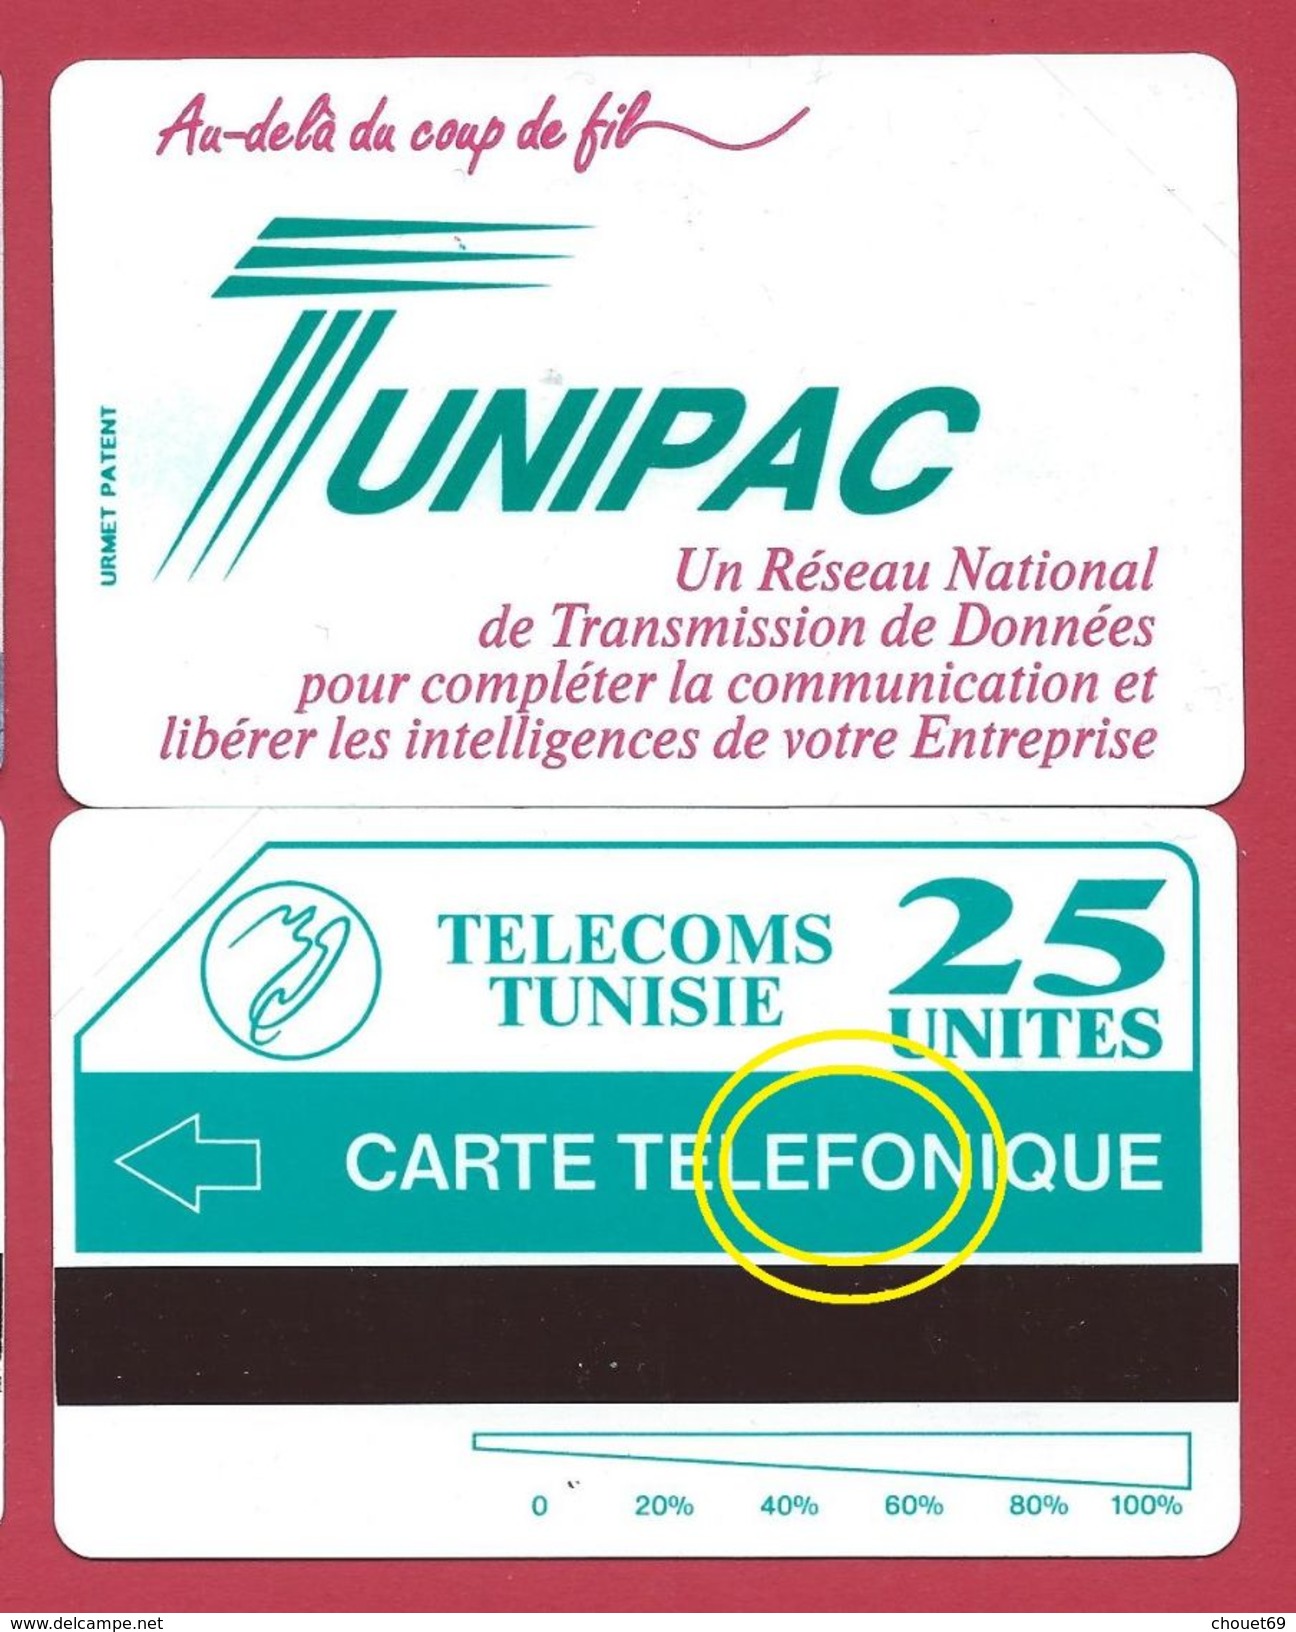 TUNISIE TUNIPAC erreur TELEFONIQUE au lieu de PH variété MINT URMET NEUVE 